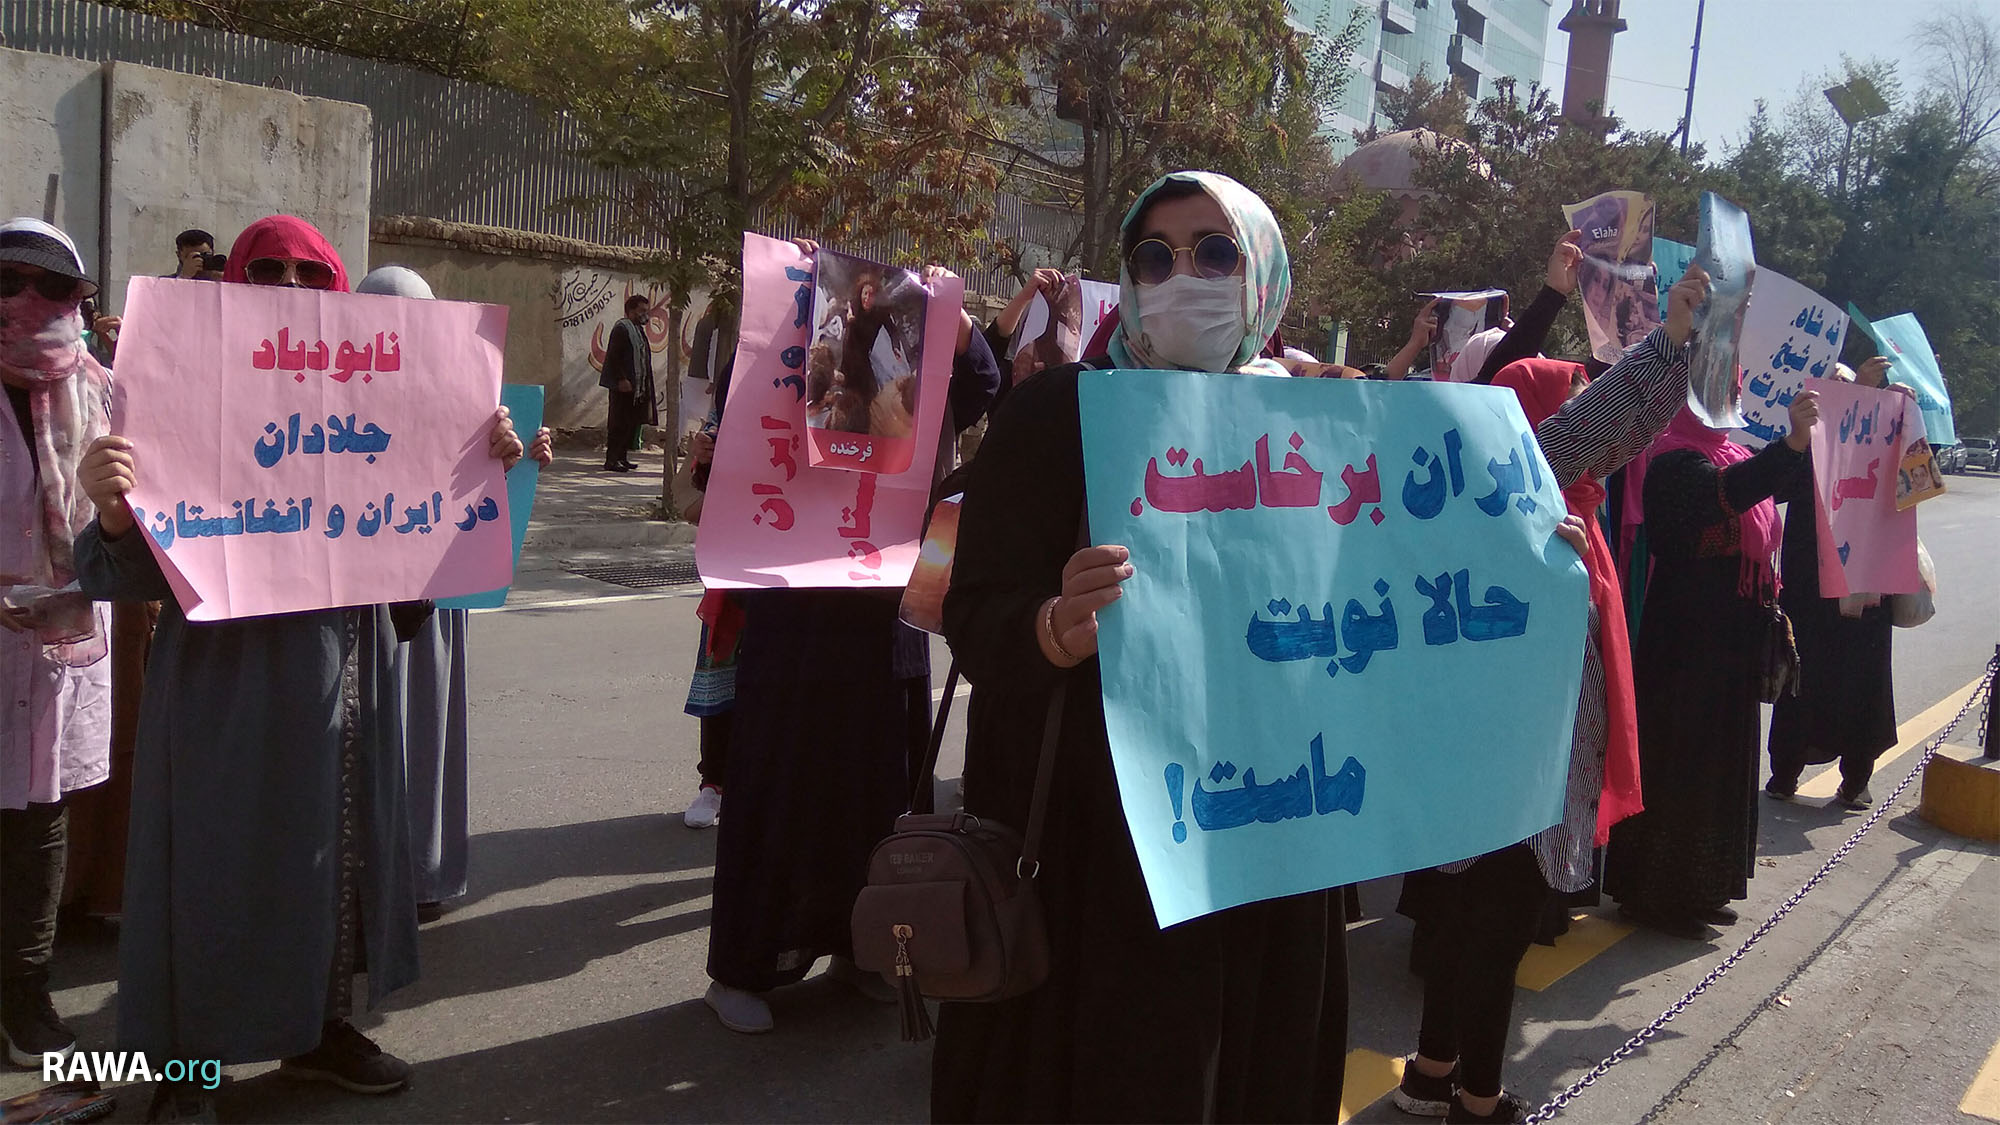 تجمع اعتراض زنان افغان در برابر سفارت رژیم خونخوار ایران در کابل در همبستگی با زنان و جنبش شکوهمند مردم ایران